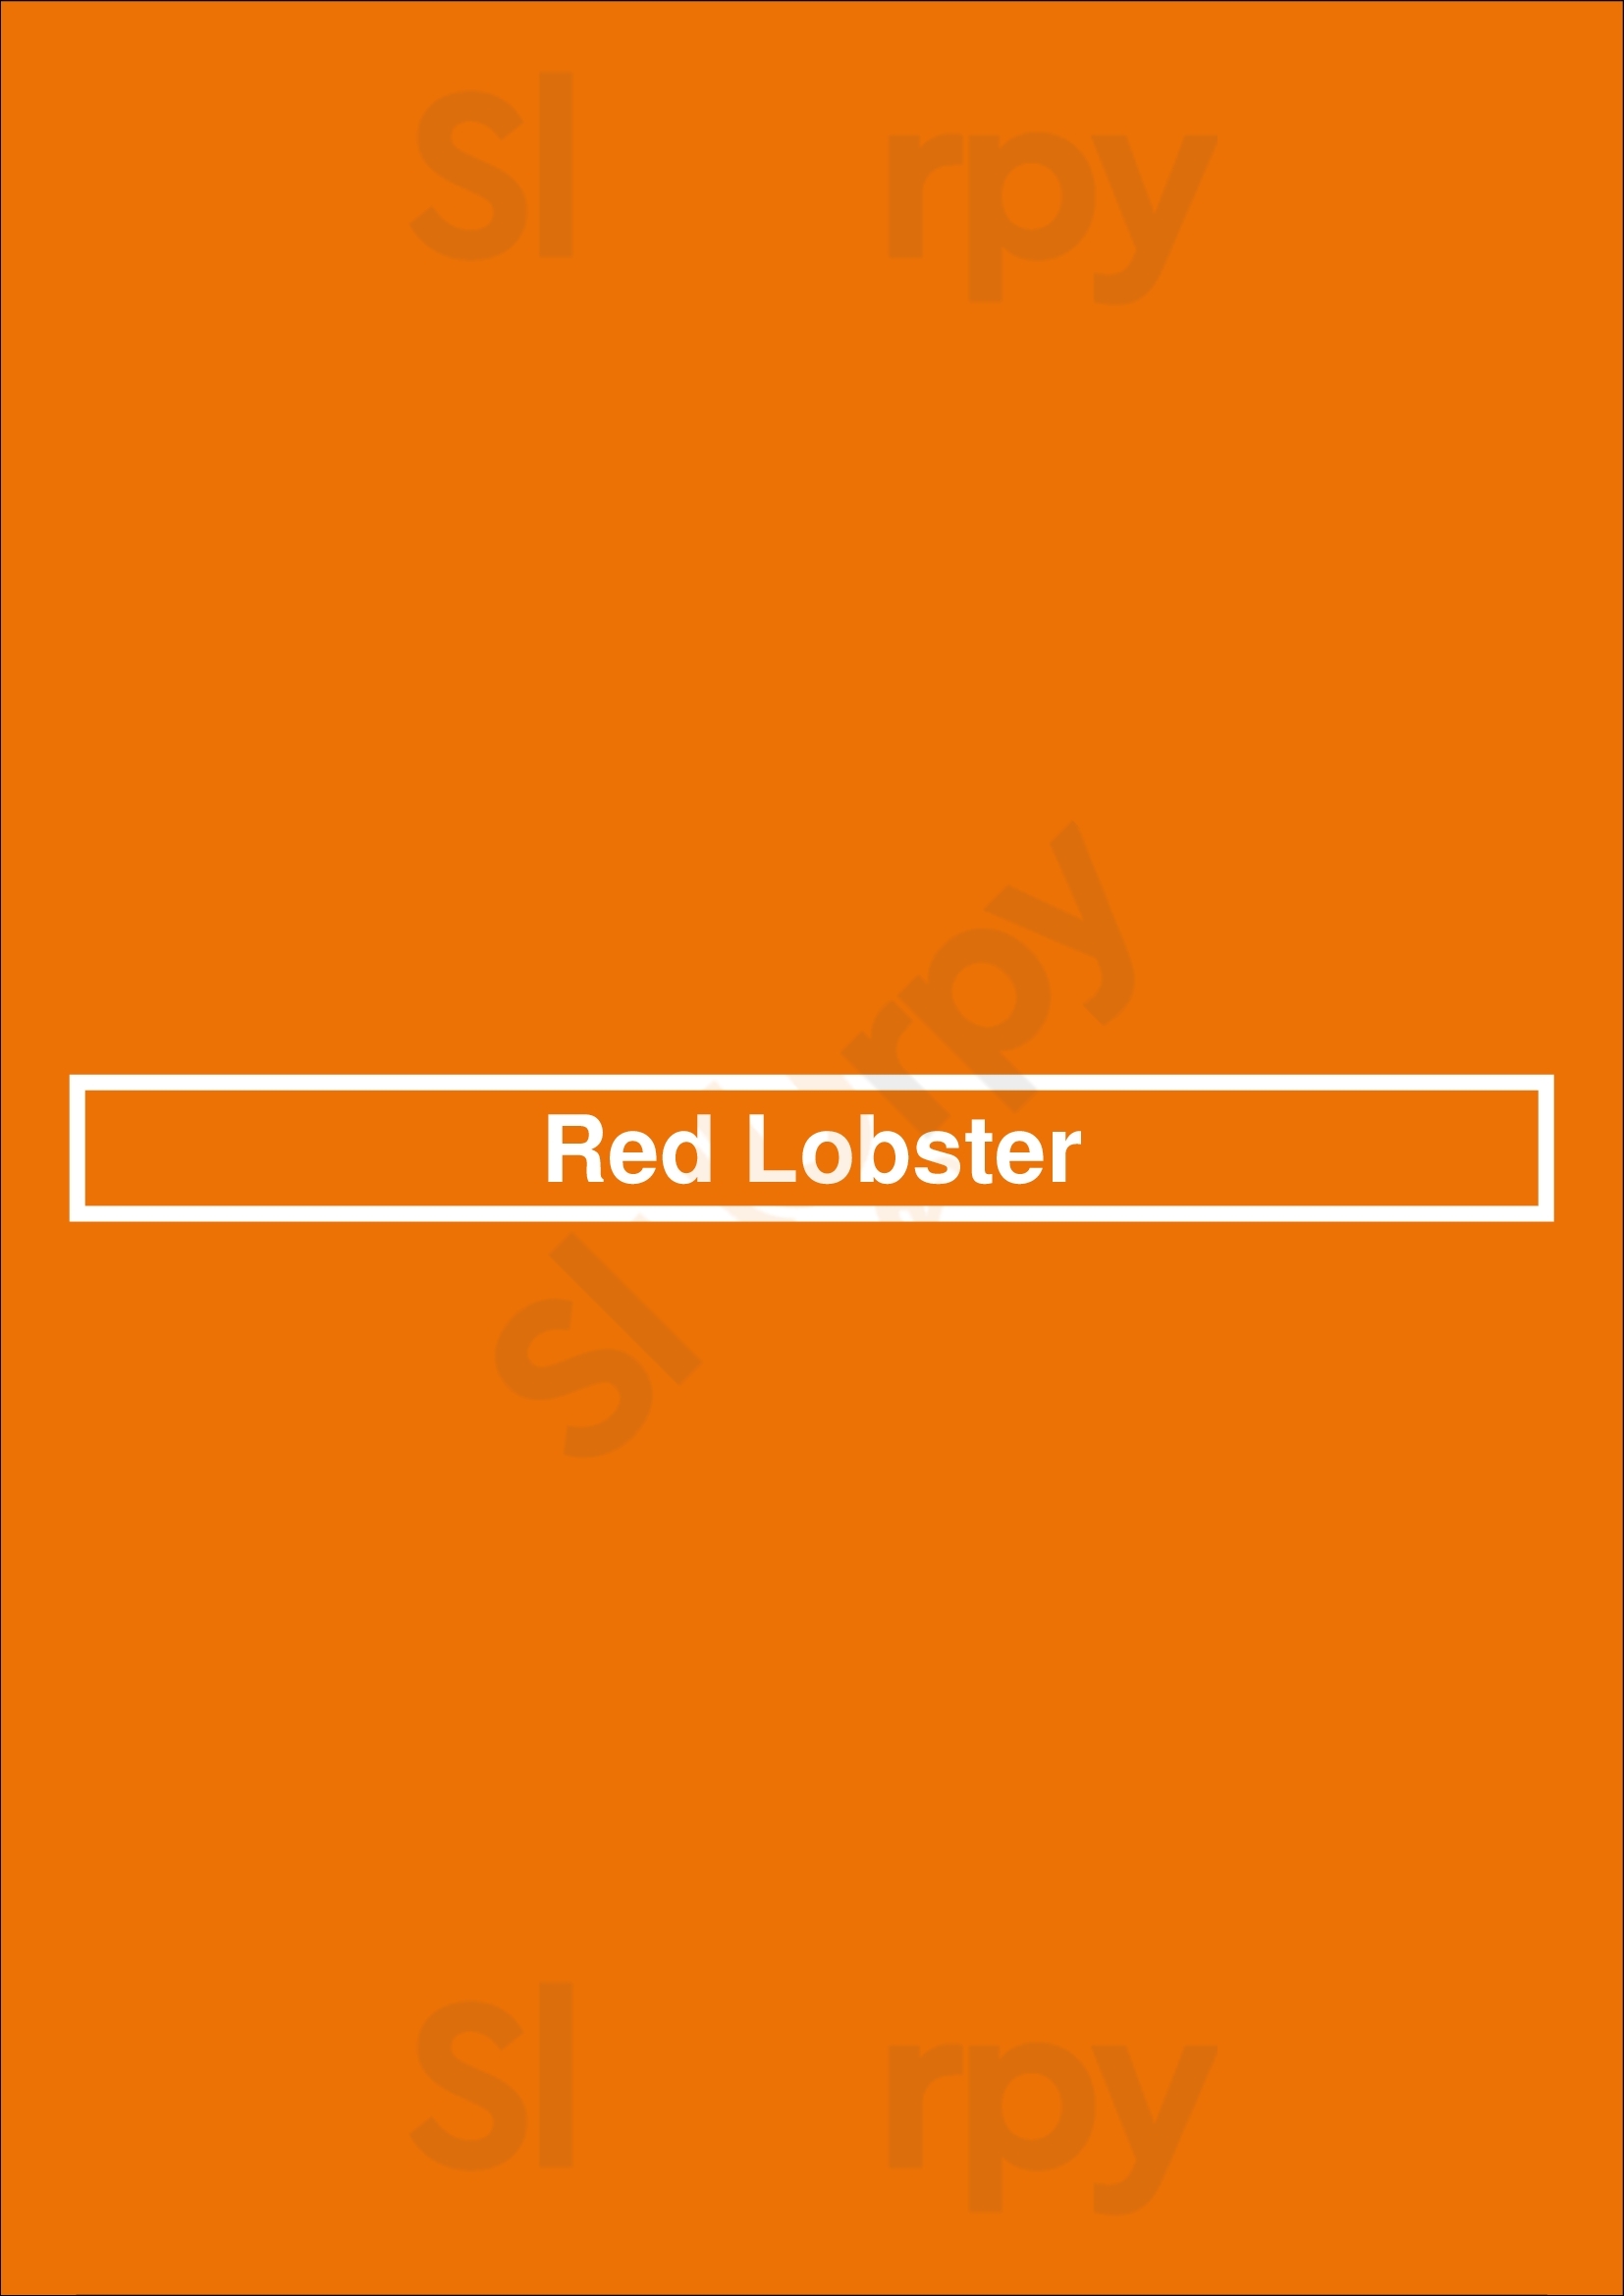 Red Lobster Nashville Menu - 1